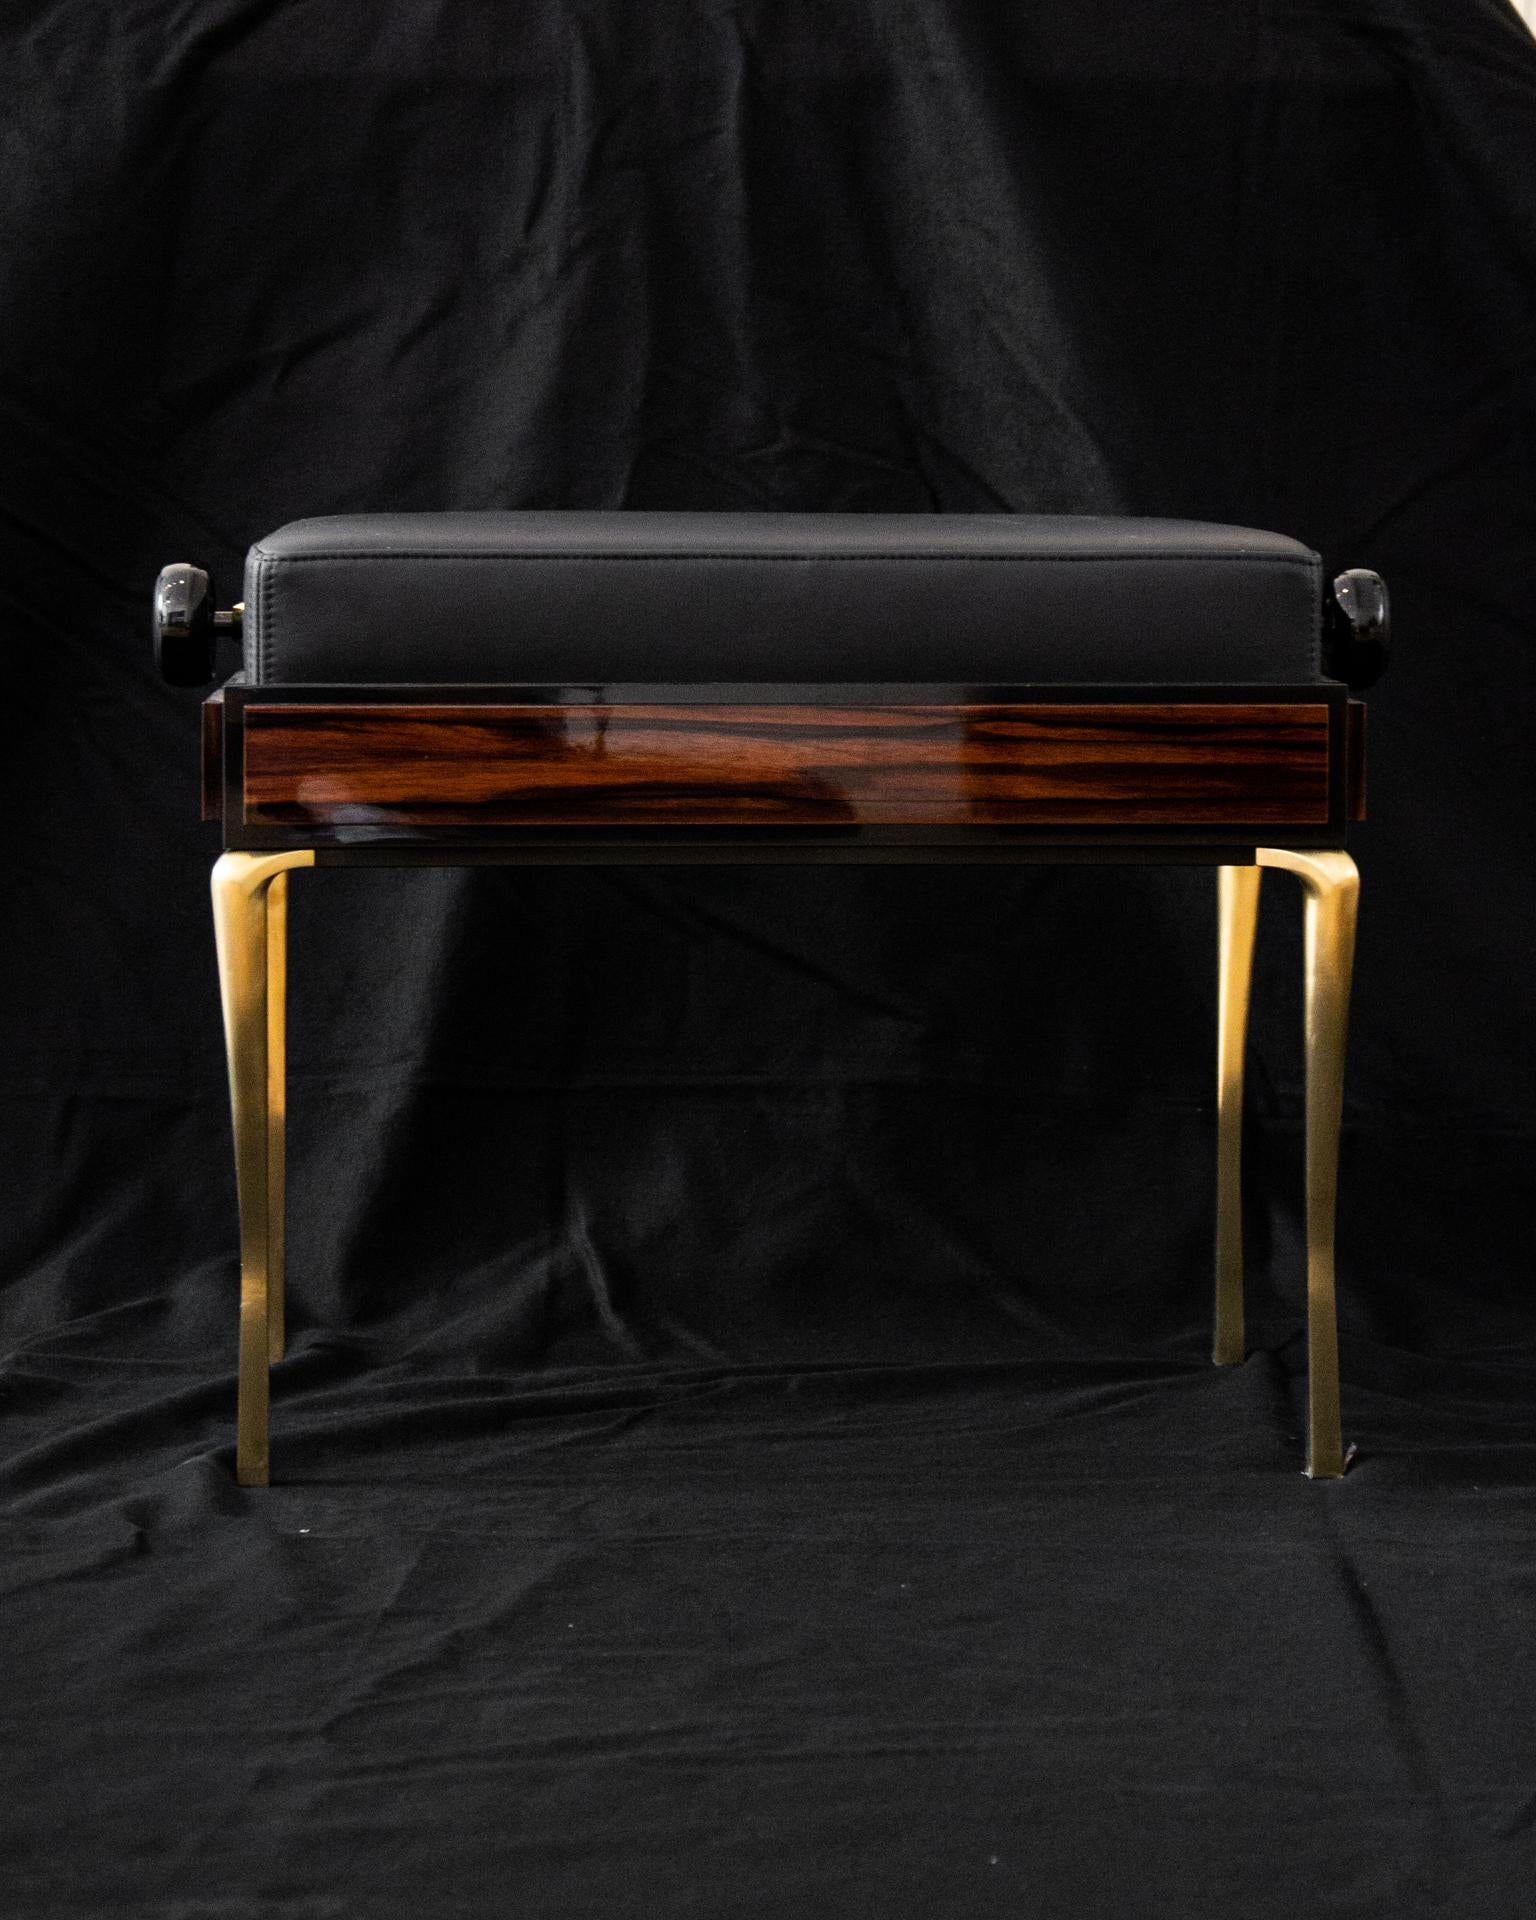 Voici le premier beau banc de piano au monde. Confrontés au défi de créer un siège esthétiquement étonnant pour compléter les pianos authentiquement conçus par Poul Henningsen, nous avons décidé de créer une pièce qui.. :

-a une forme frappante